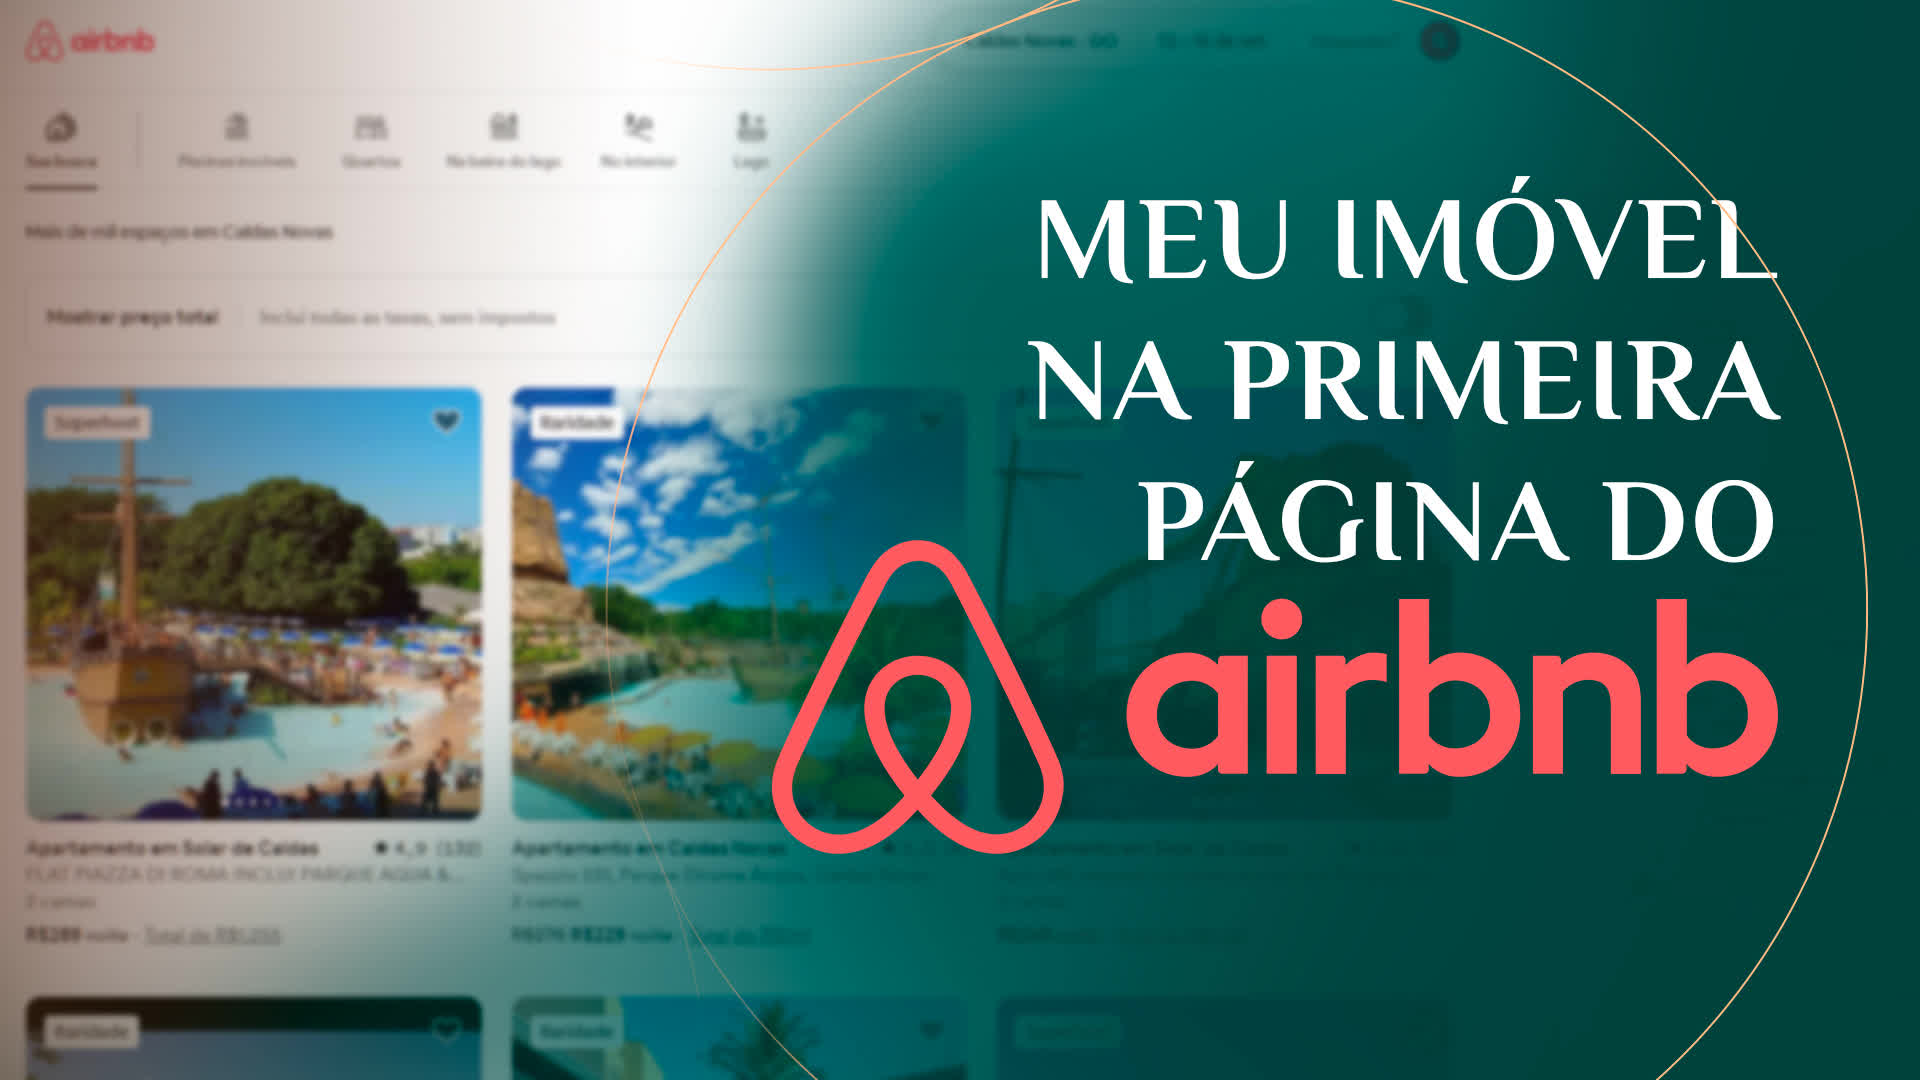 O que é Airbnb? Saiba tudo sobre essa plataforma de hospedagem!